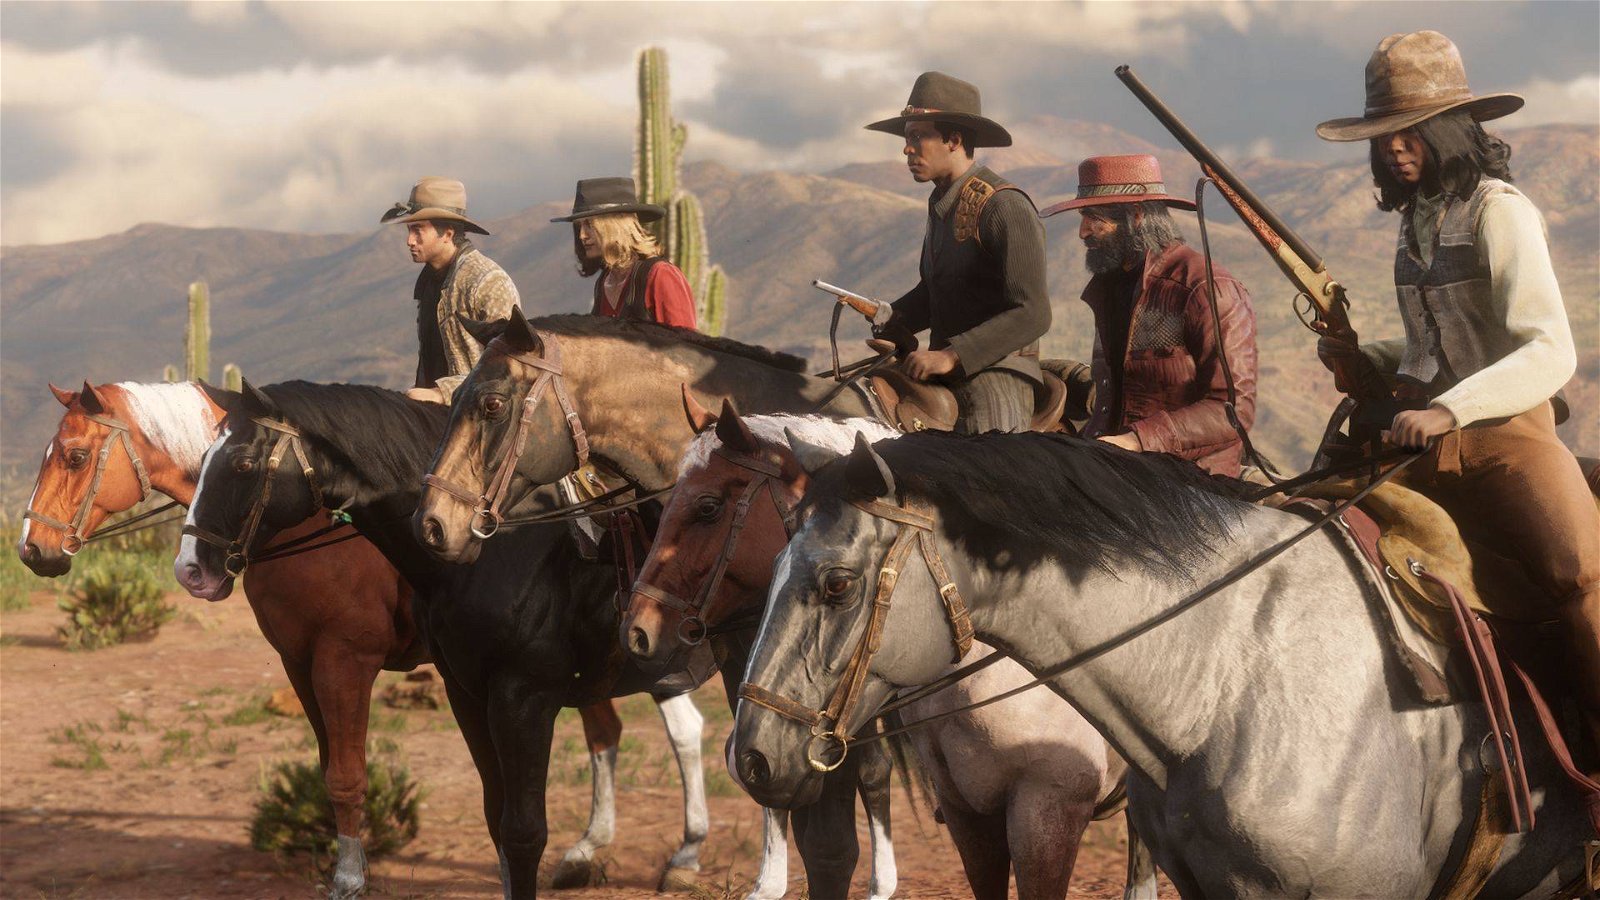 Immagine di Red Dead Redemption 2: alcuni dialoghi con il cavallo erano troppo "ambigui e intimi"